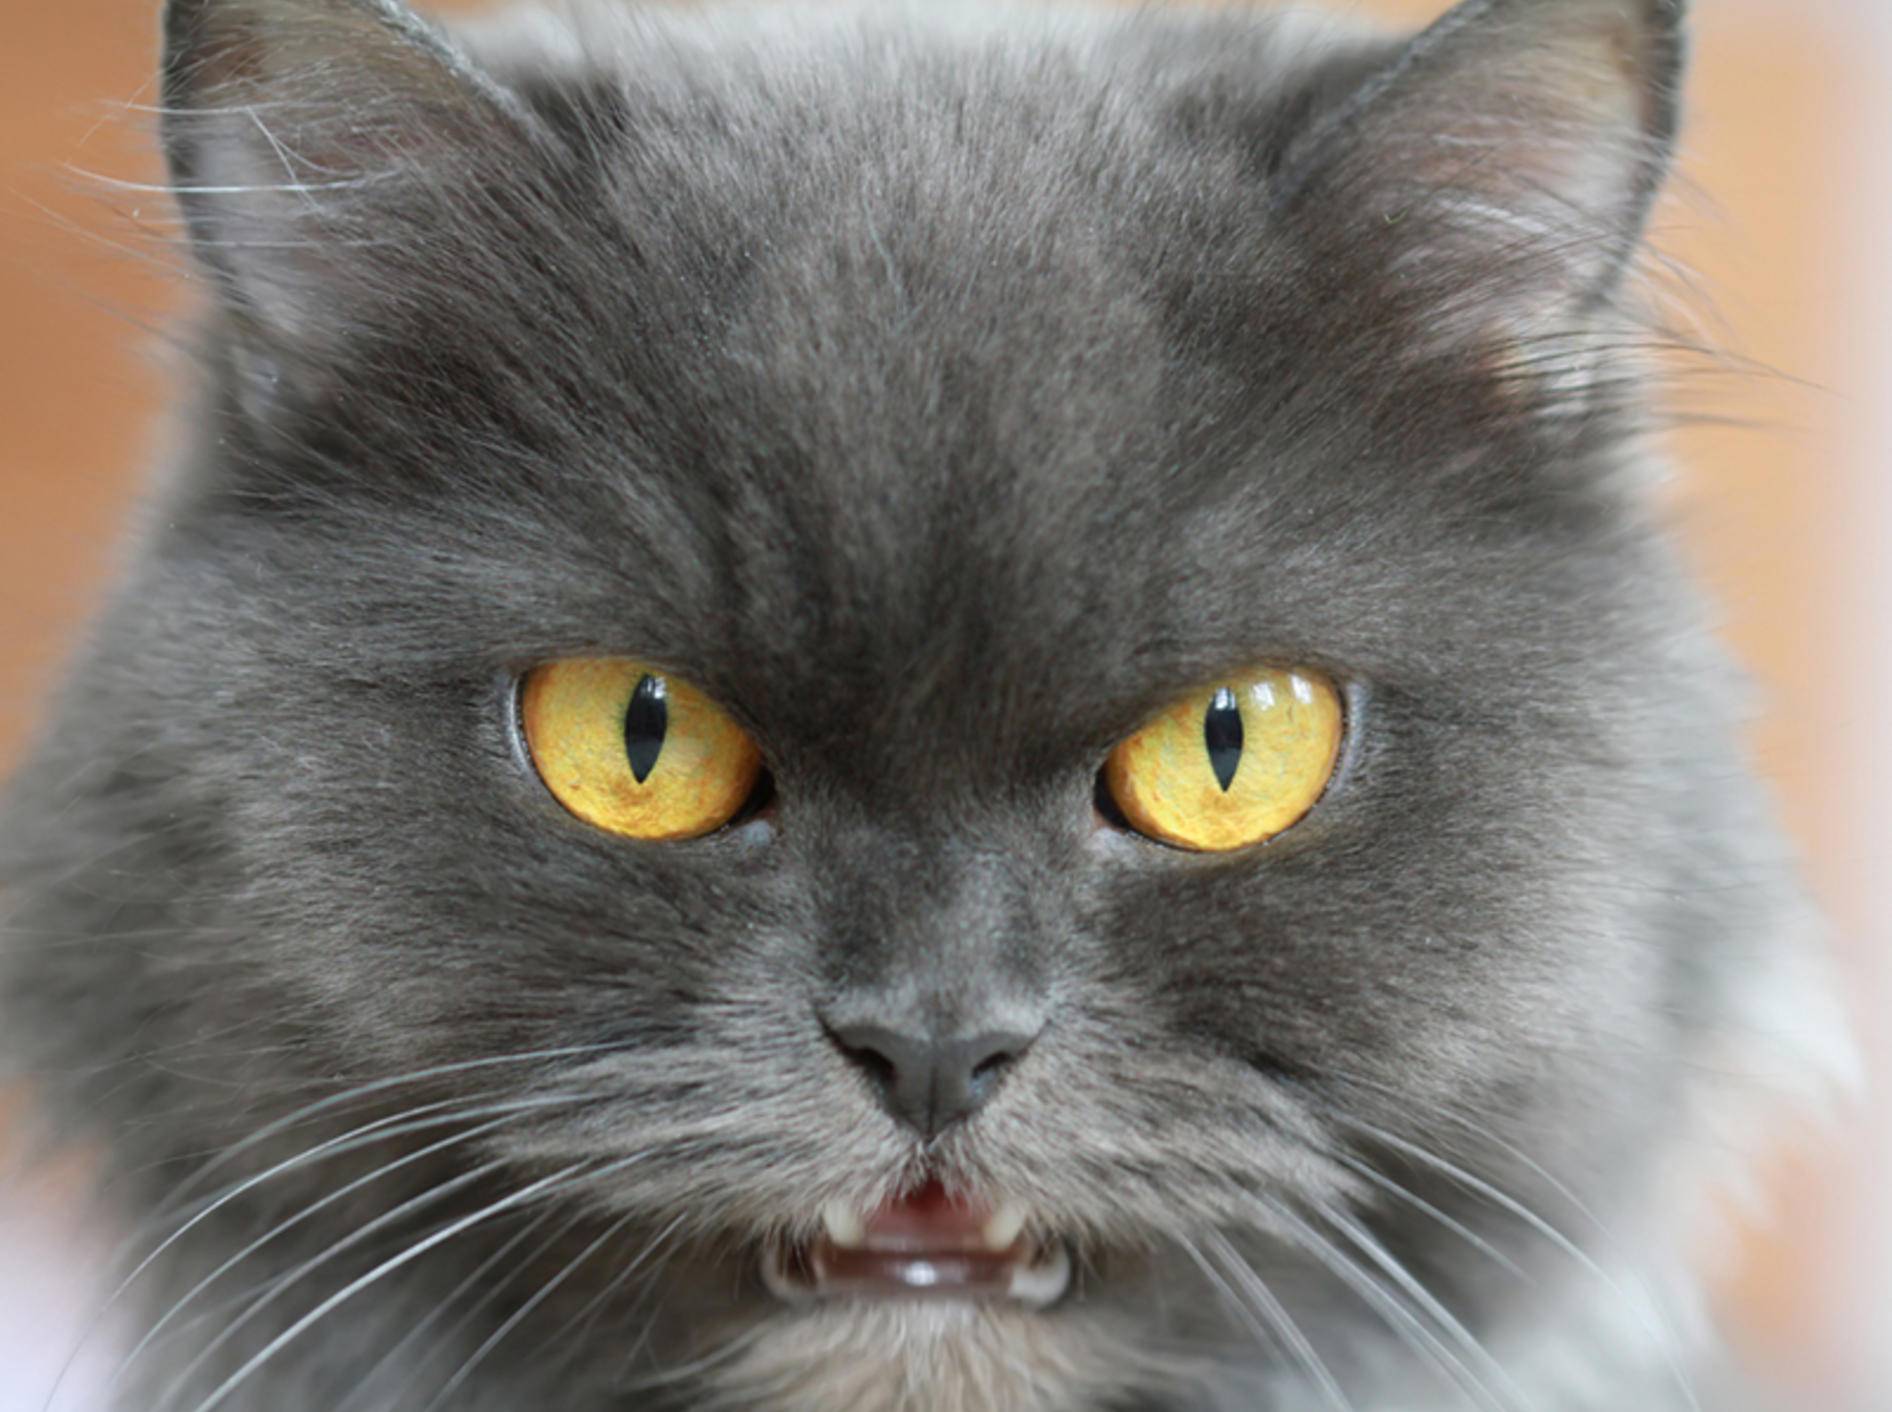 Reagiert die Katze aggressiv auf Menschen ist Vorsicht geboten – Bild: Shutterstock / turlakova